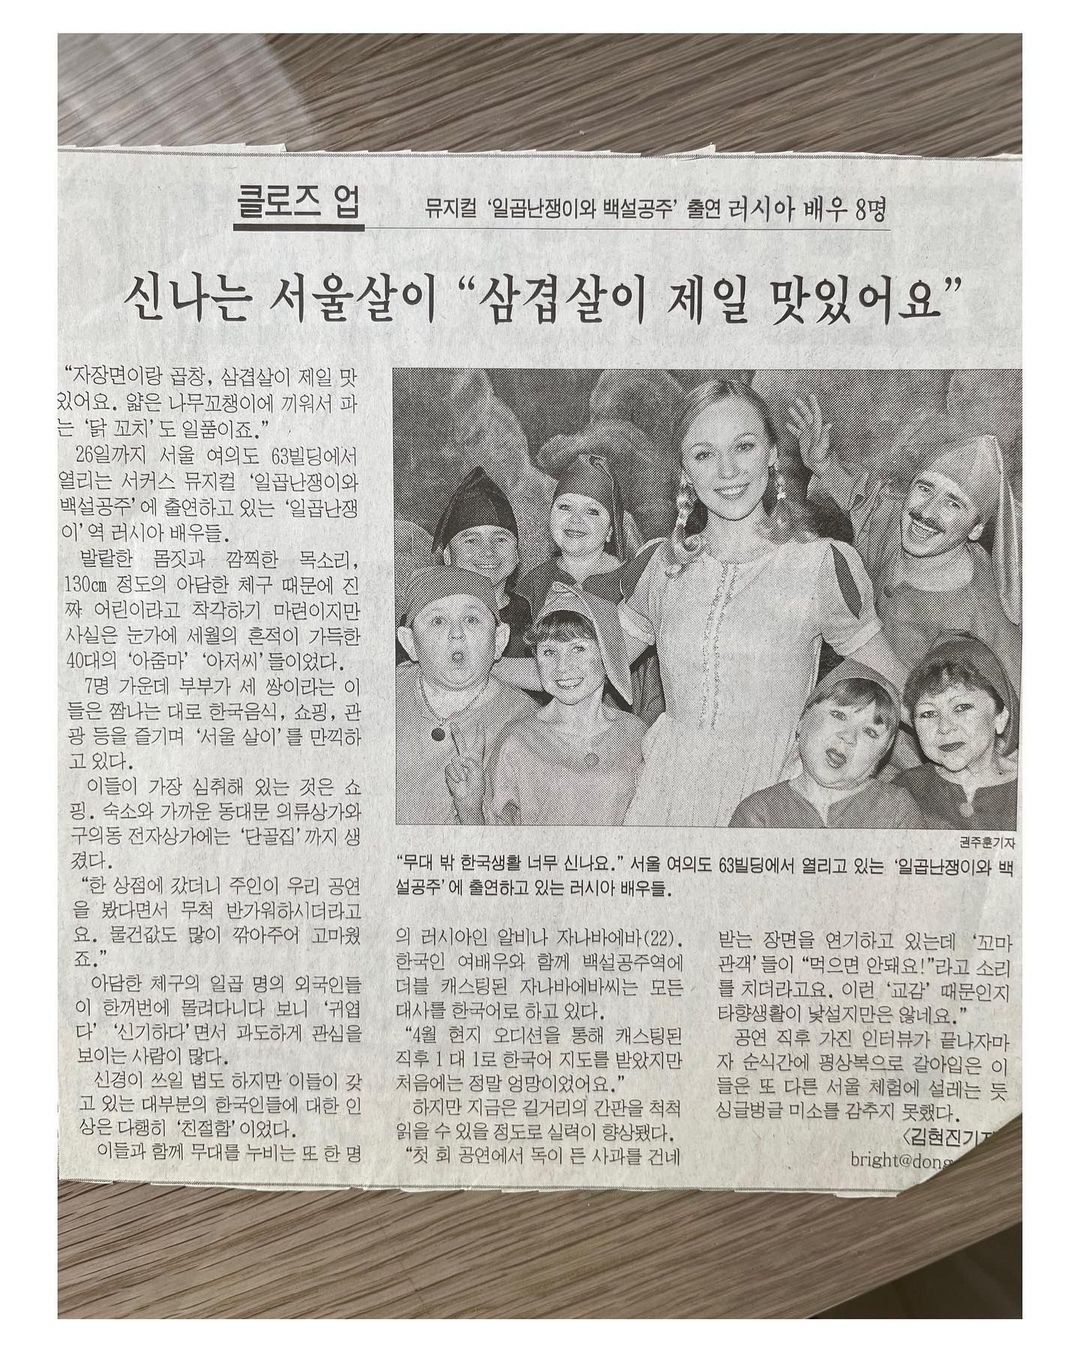 Альбина Джанабаева показала корейский ретро-журнал, где она позирует в образе Белоснежки в окружении пожилых гномов и принца, похожего на женщину